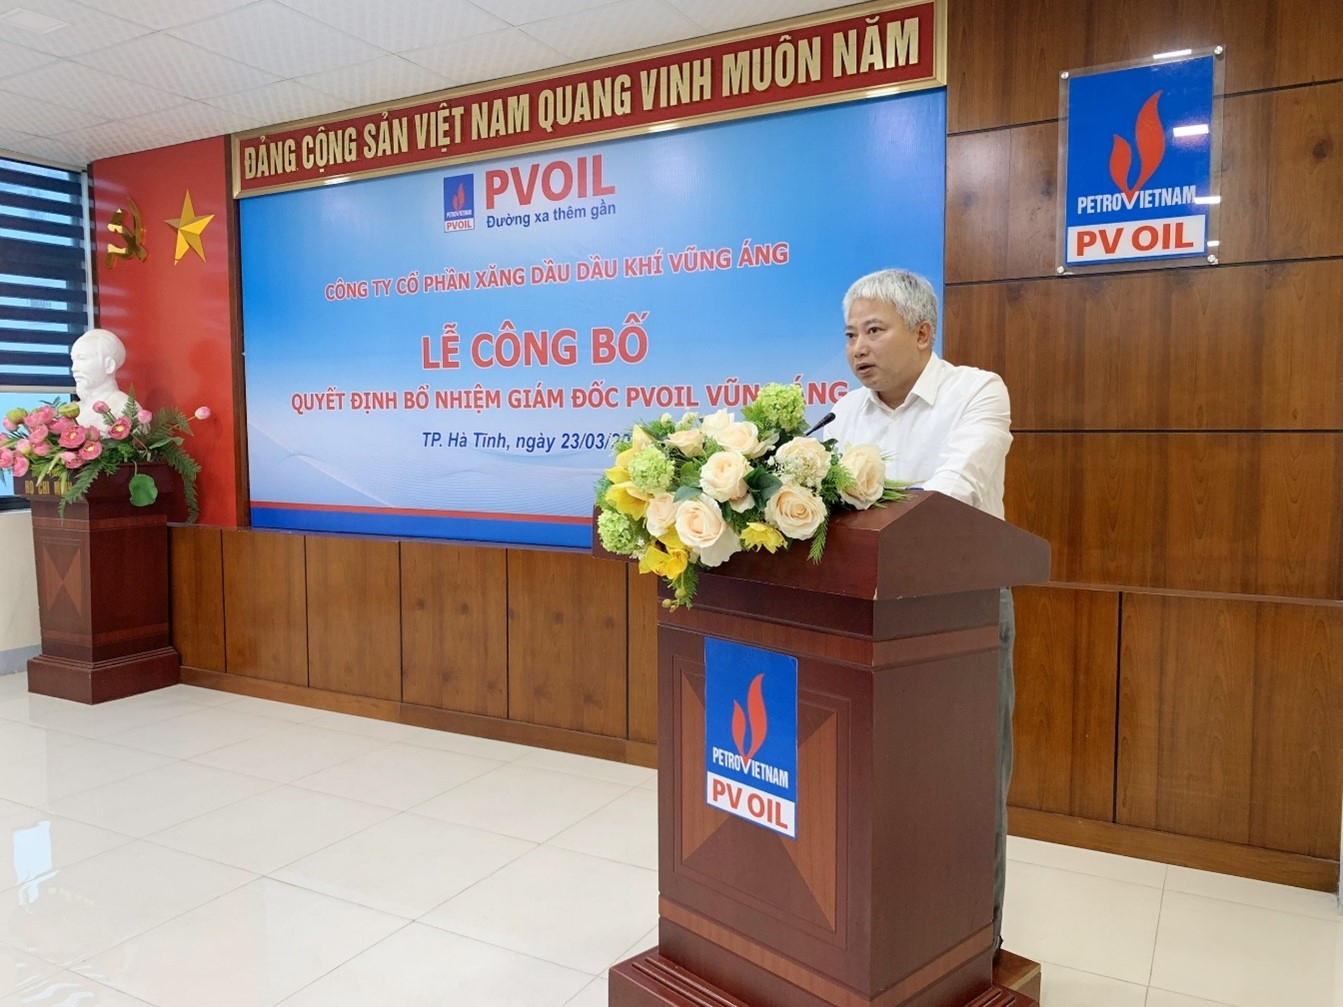 Ông Hoàng Nguyên Thanh – Giám đốc PVOIL Vũng Áng phát biểu nhận nhiệm vụ 